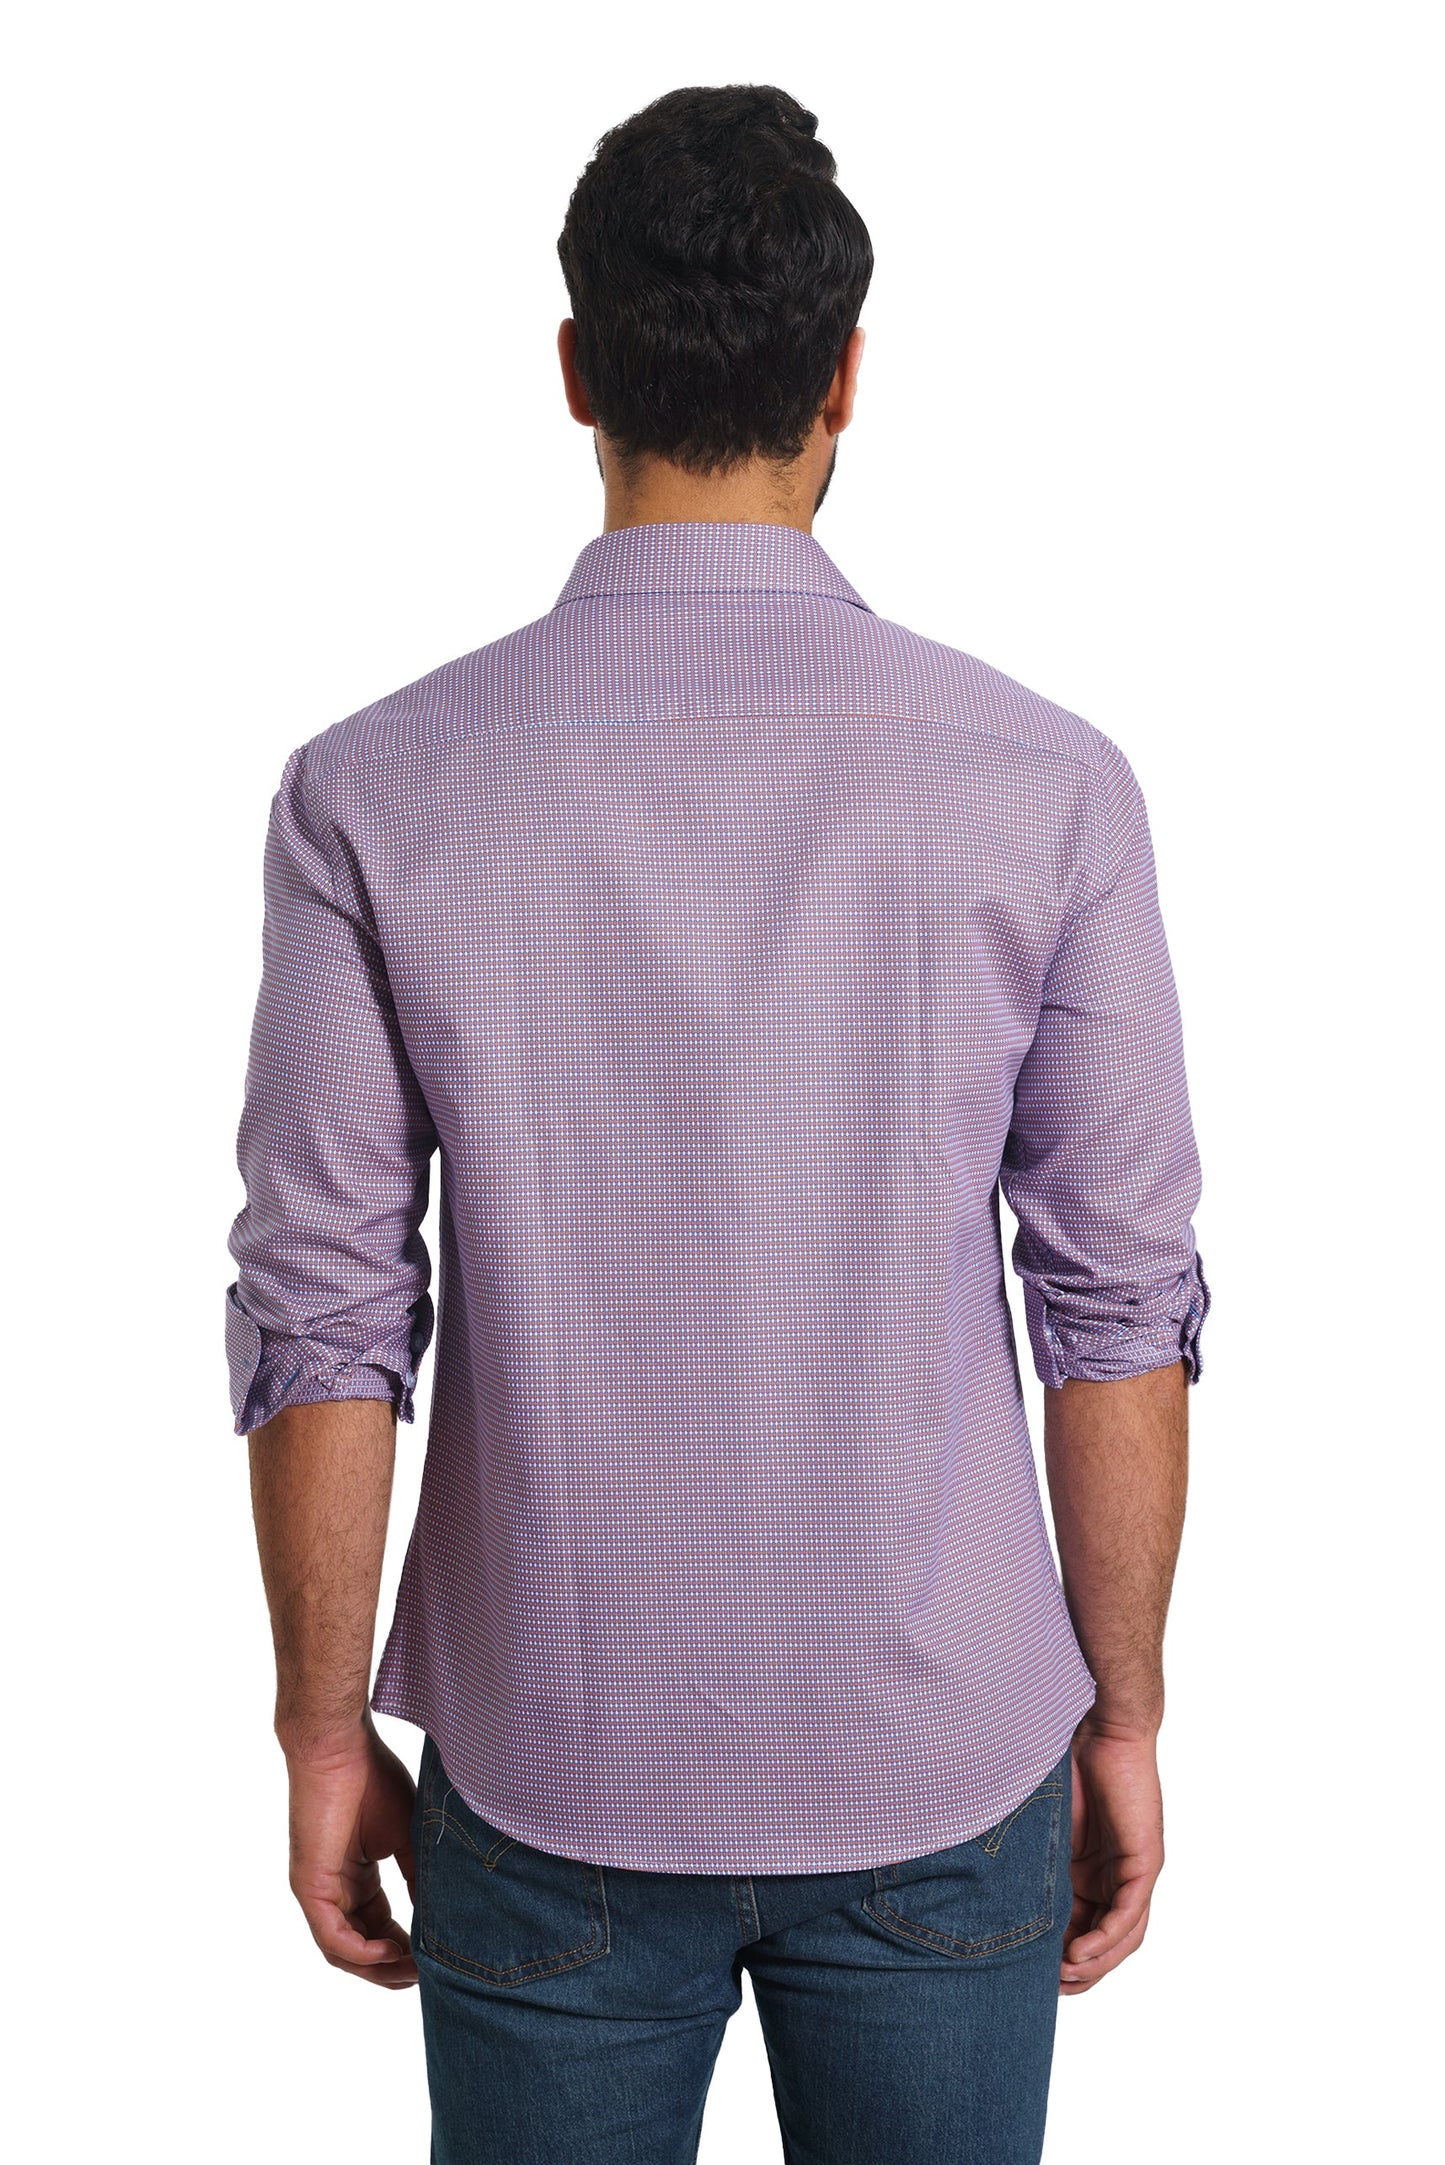 Blue Print Long Sleeve Shirt TH-2860 Back